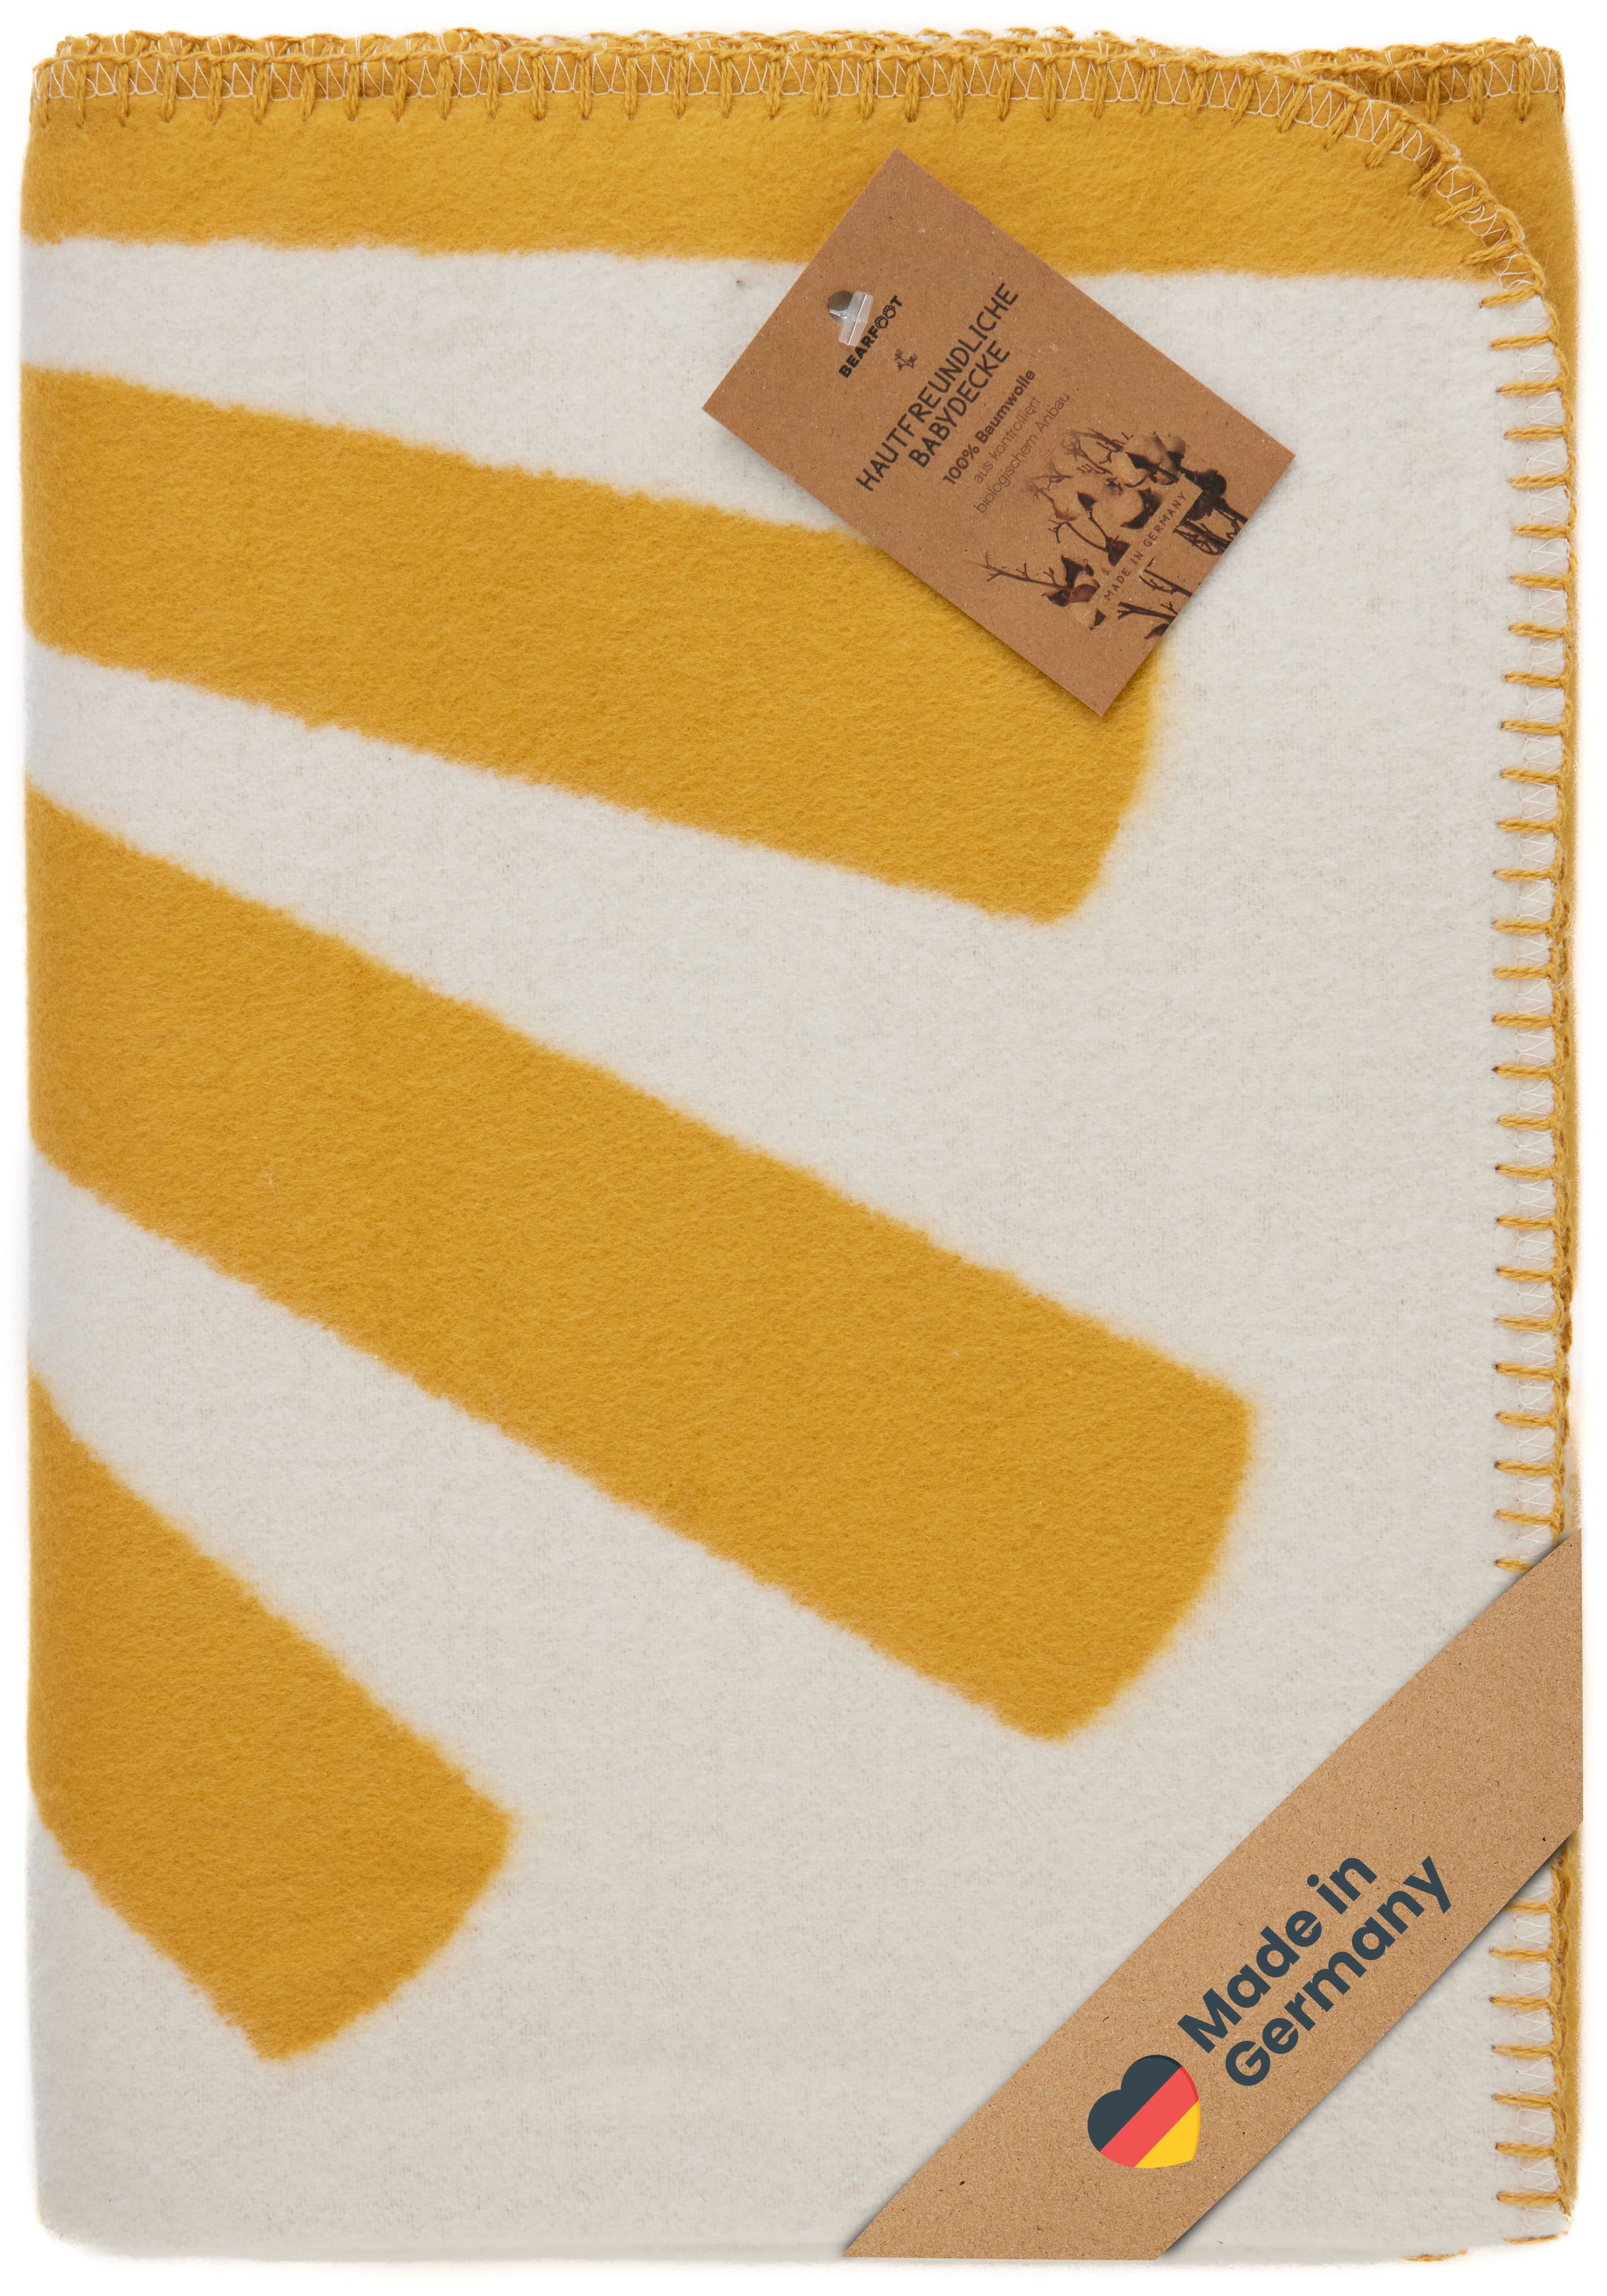 Couverture pour bébé en coton biologique, fabriquée en Allemagne, jaune soleil